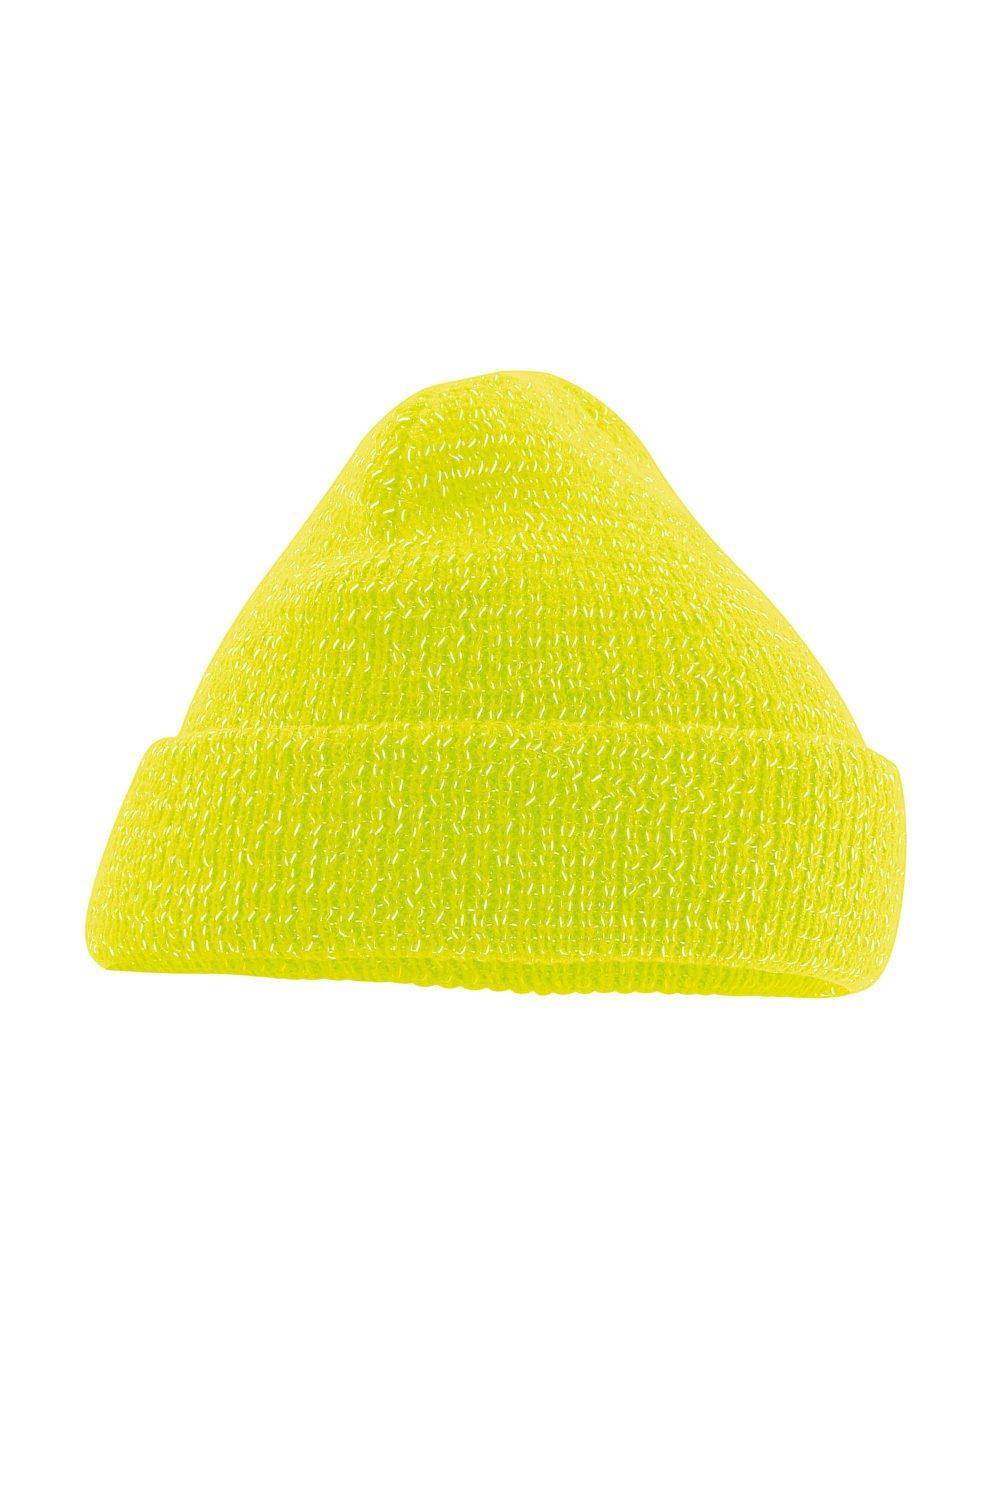 Светоотражающая шапка Beechfield, желтый